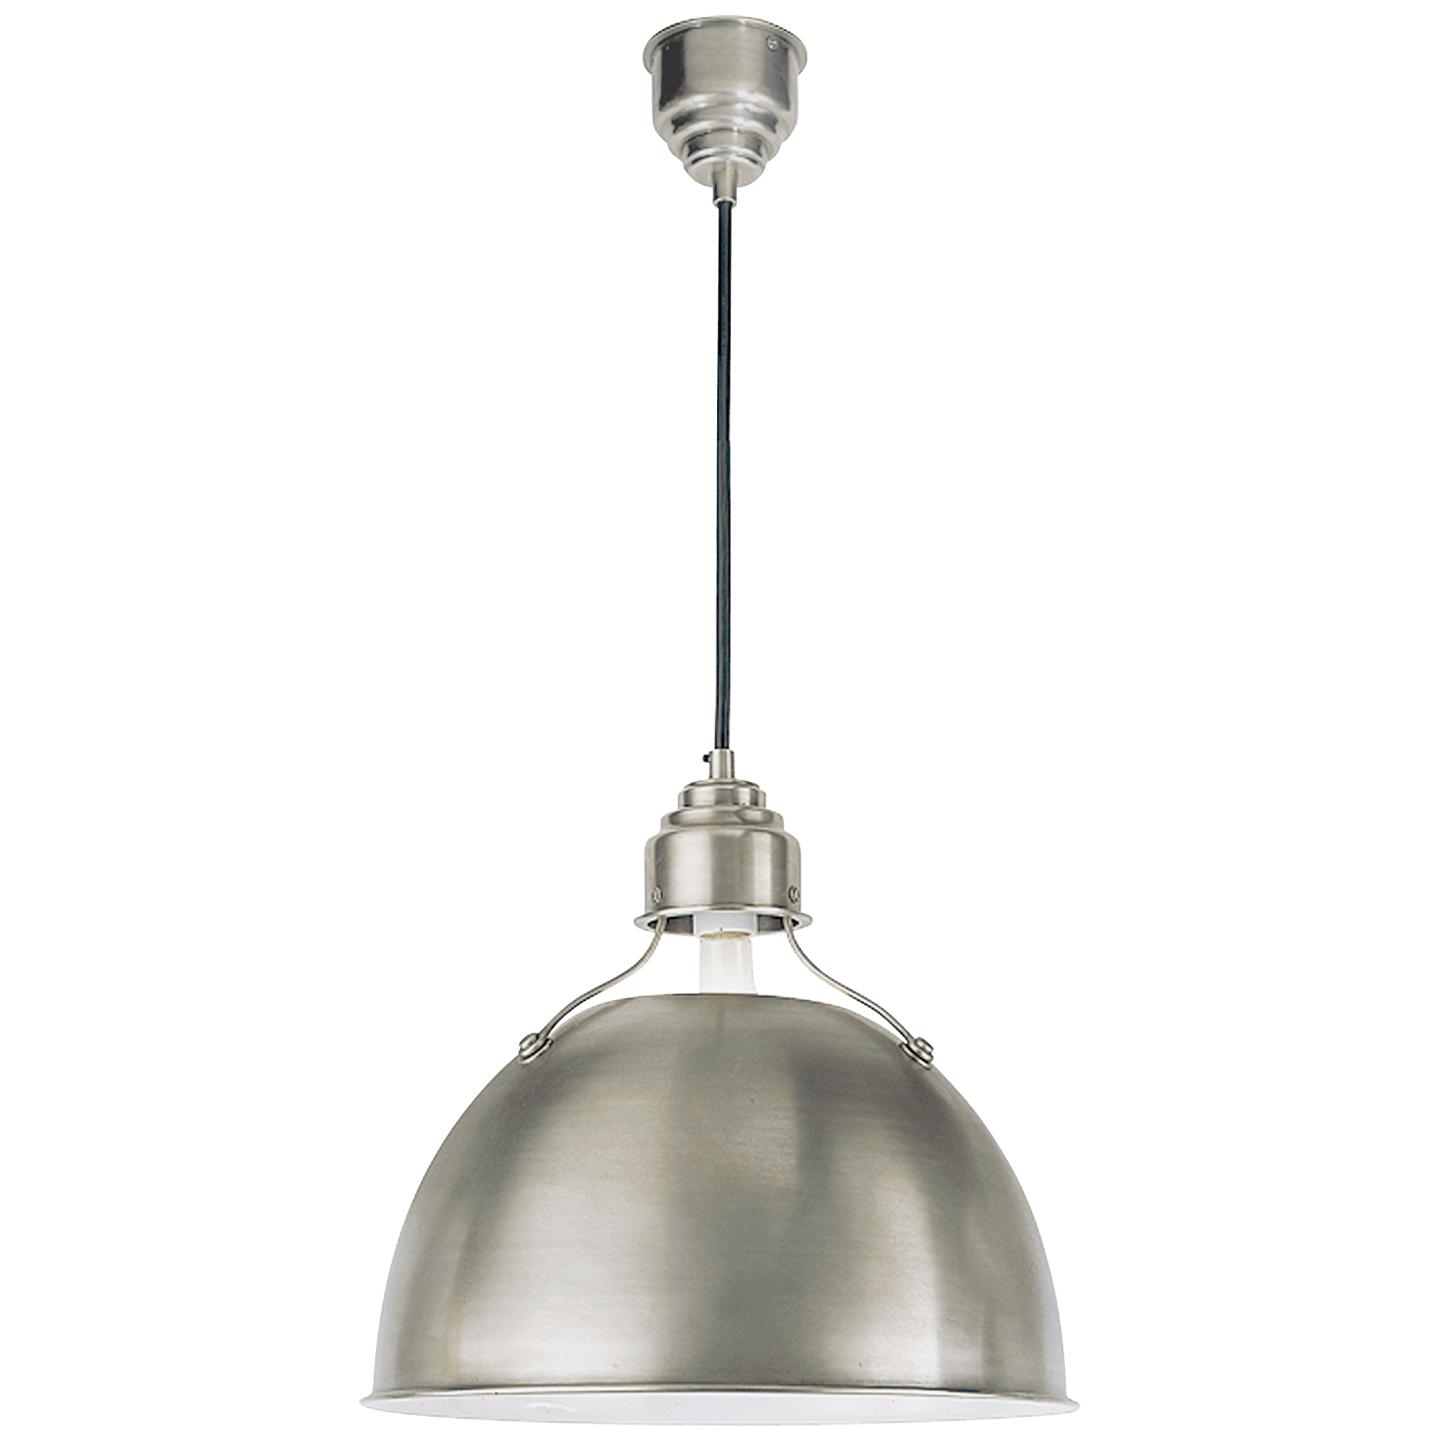 Купить Подвесной светильник Eugene Medium Pendant в интернет-магазине roooms.ru